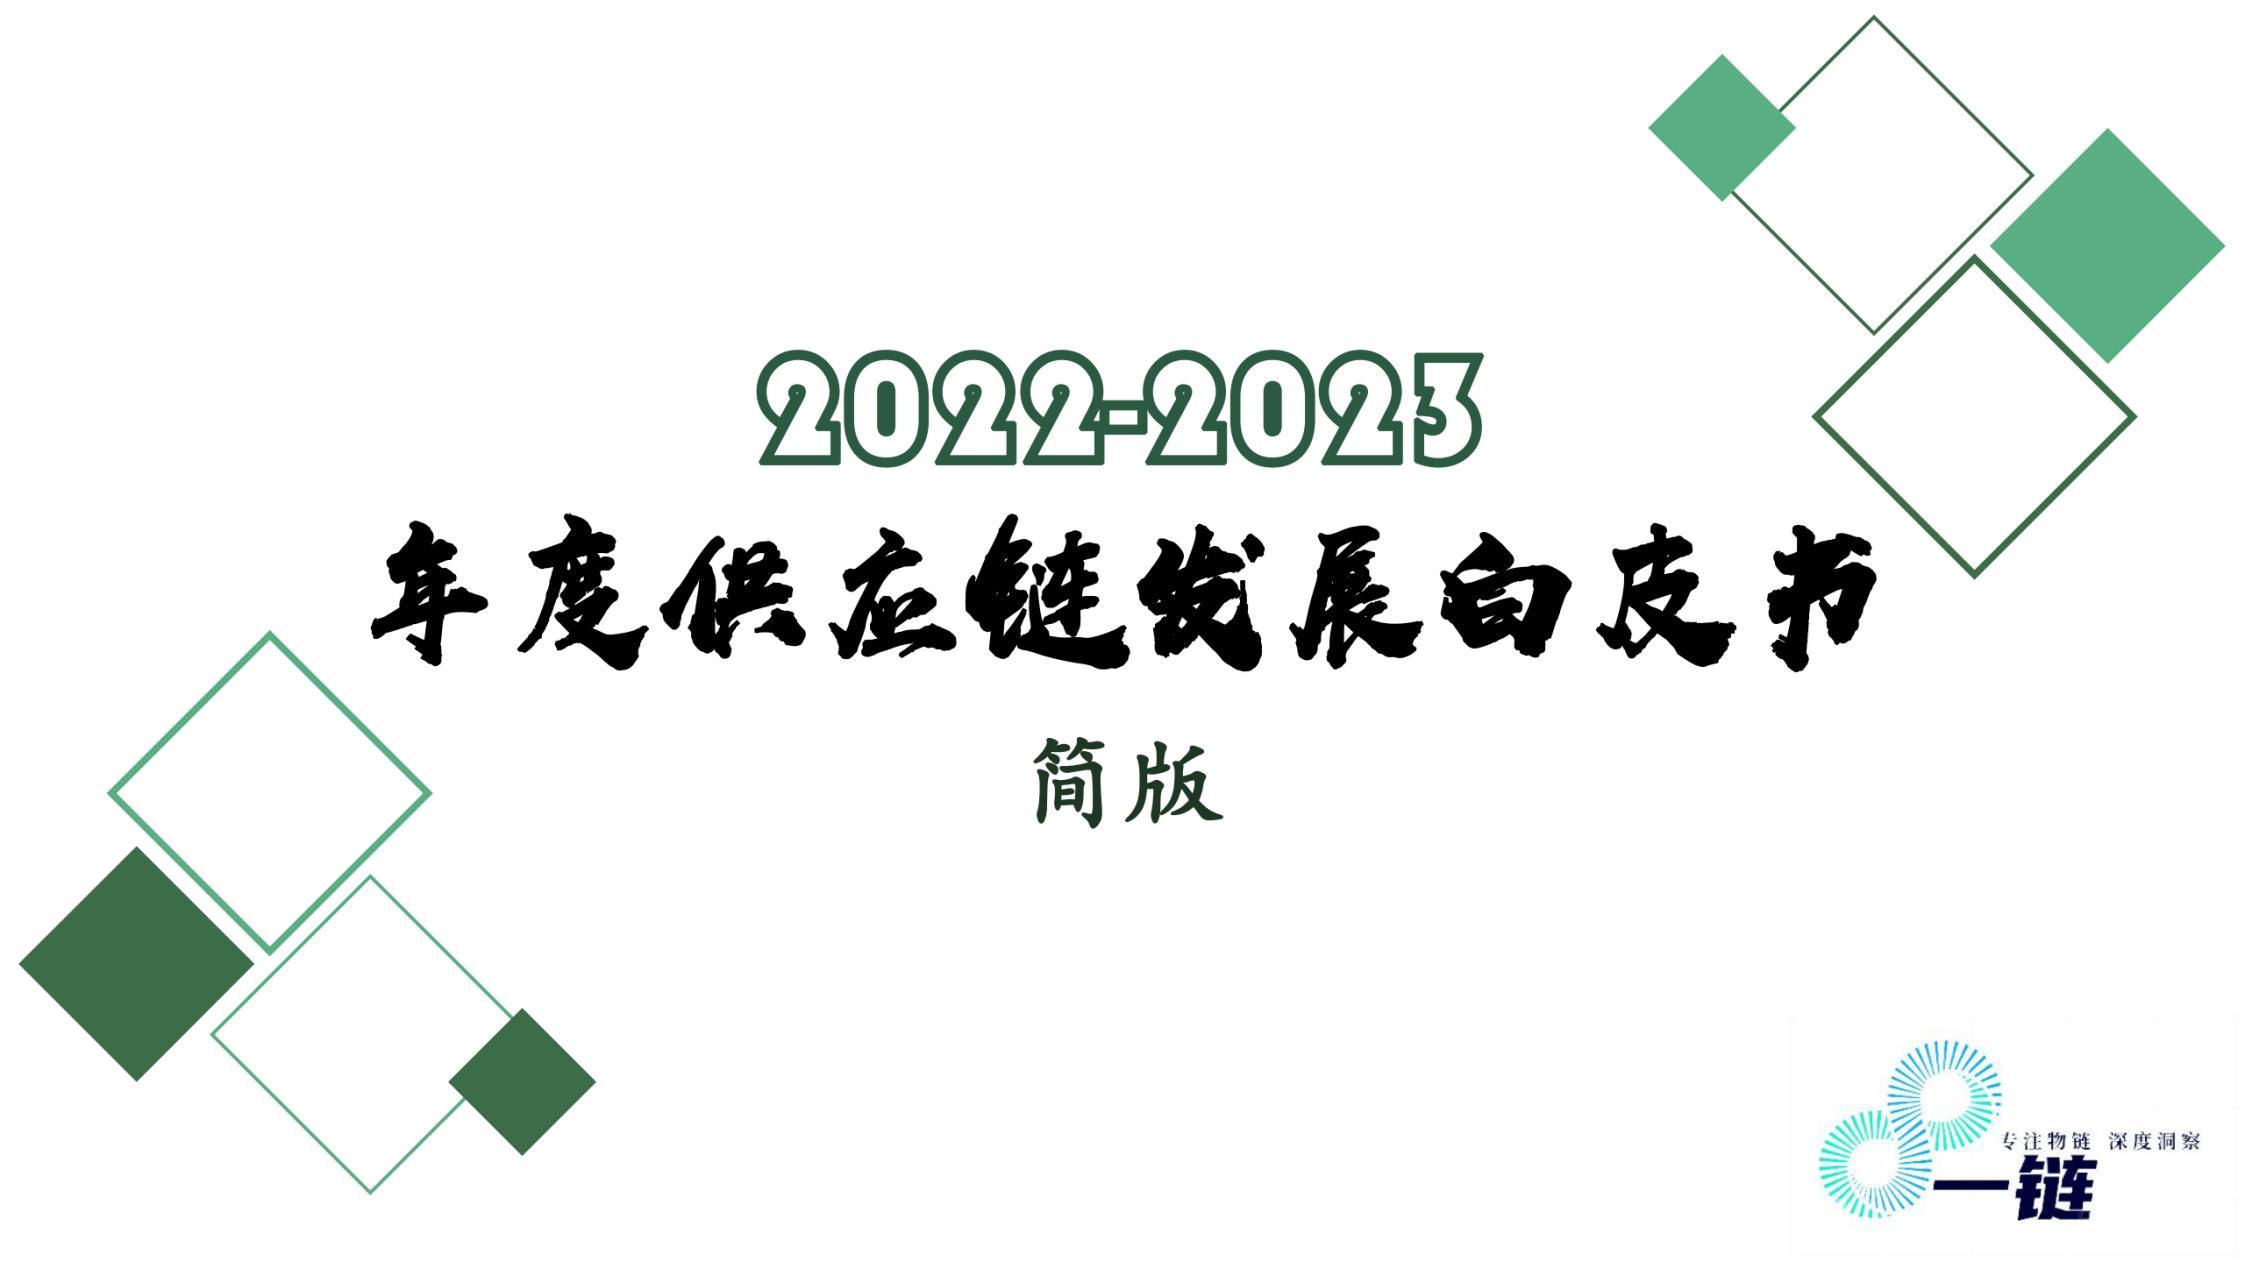 【简版】2022-2023 年度供应链发展白皮书